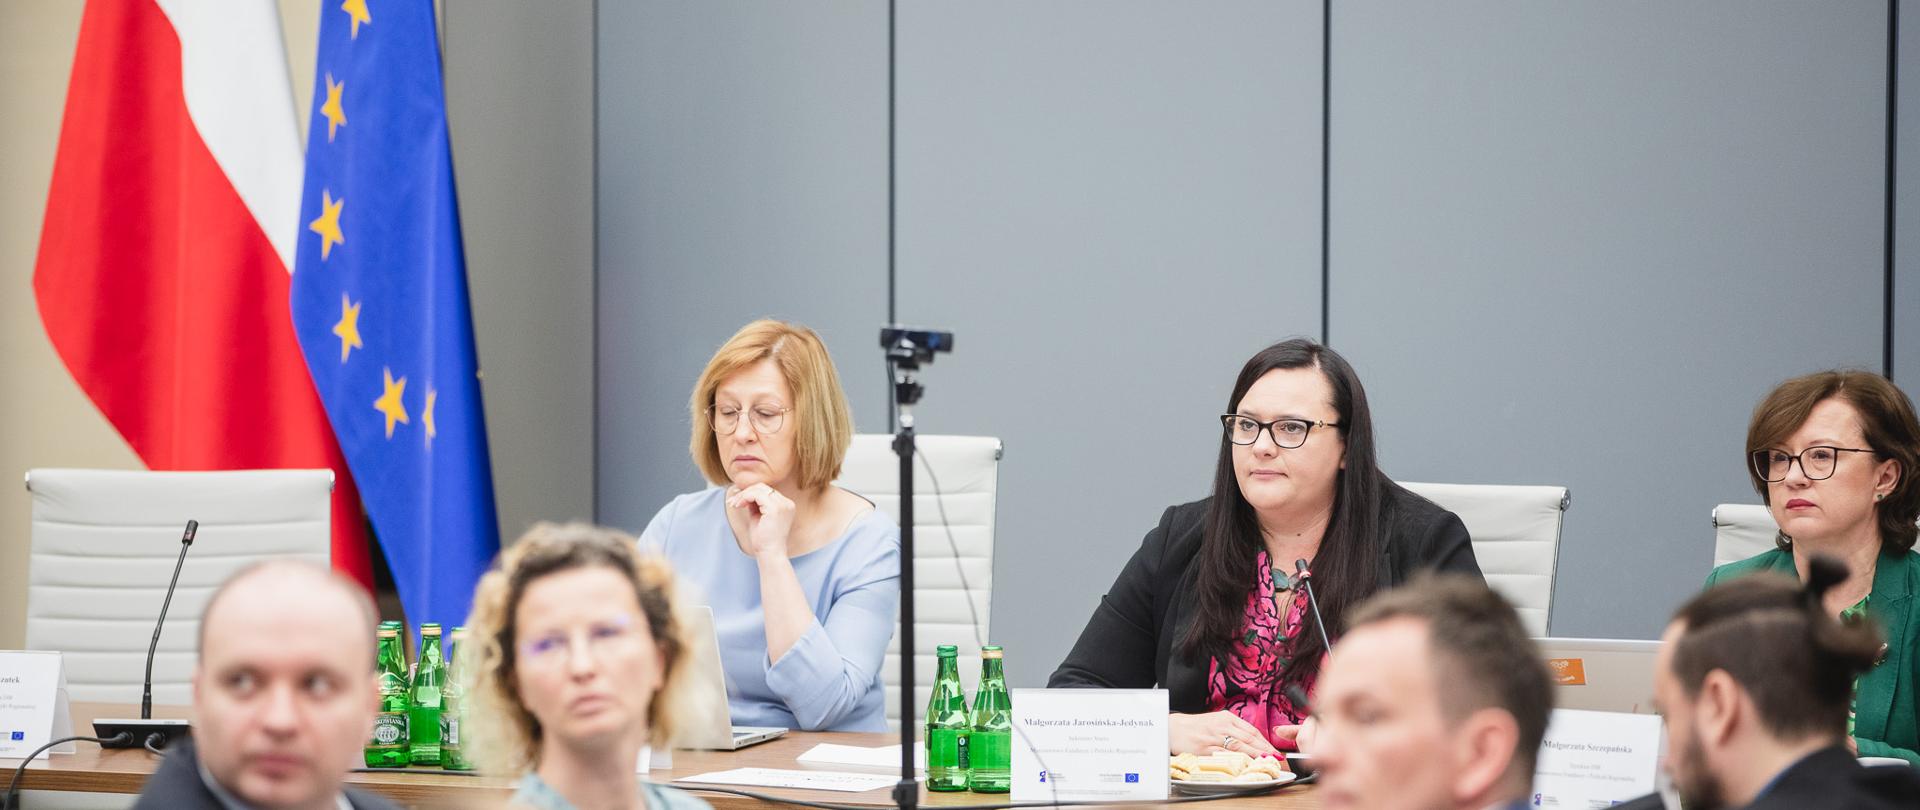 Trzy osoby siedzą obok siebie przy stole. W środku jest wiceminister Małgorzata Jarosińska-Jedynak.